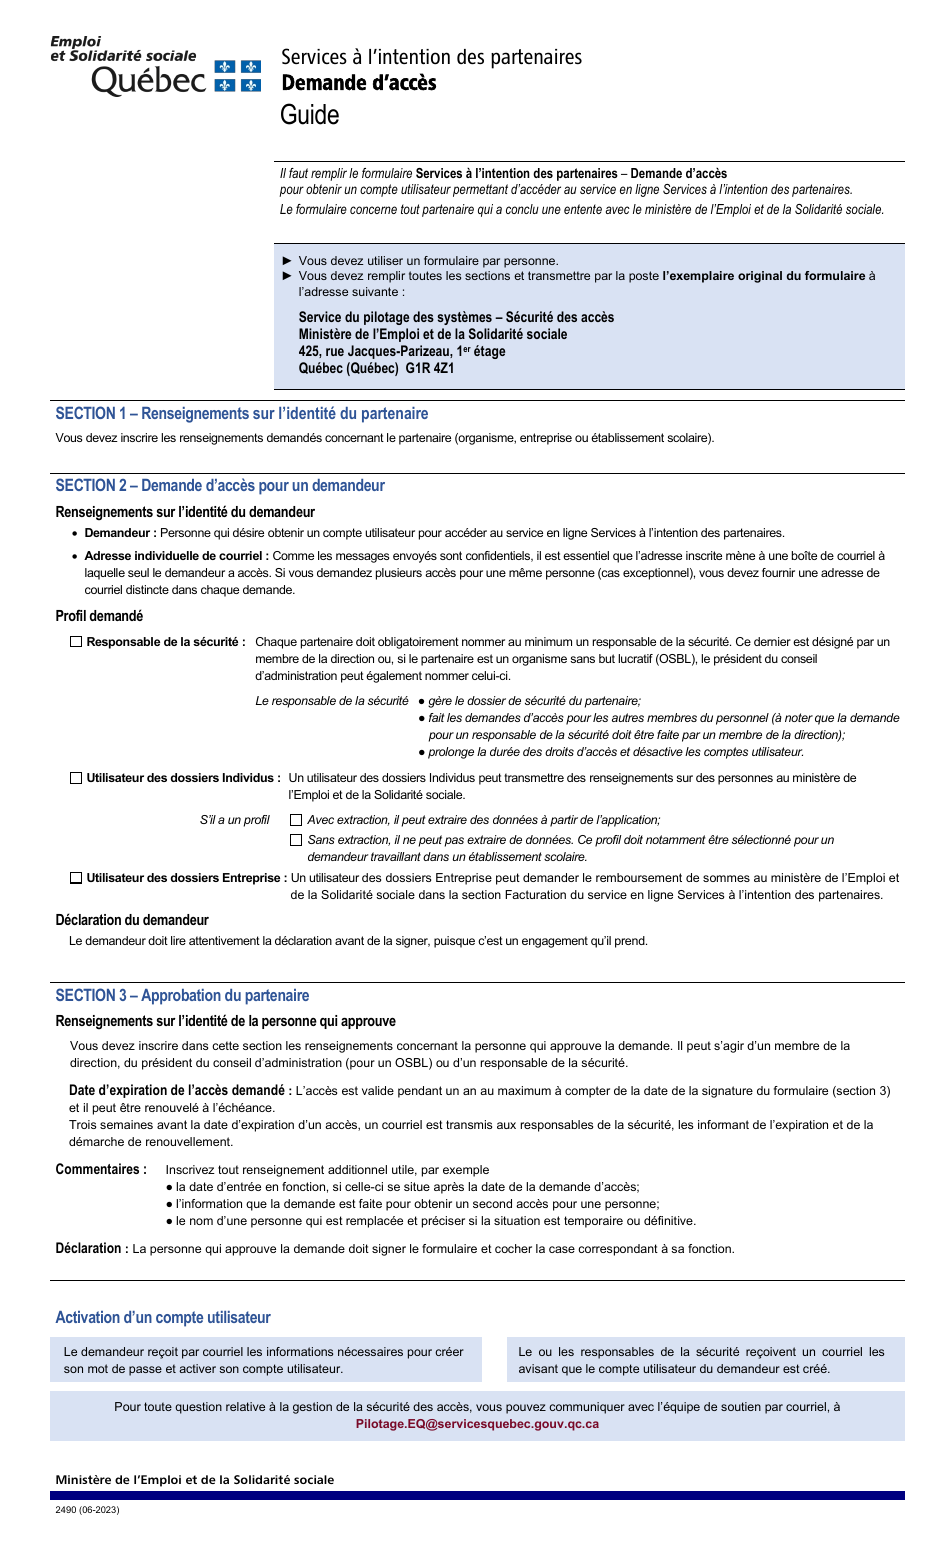 Forme 2490 Services a Lintention DES Partenaires - Demande Dacces - Quebec, Canada (French), Page 1